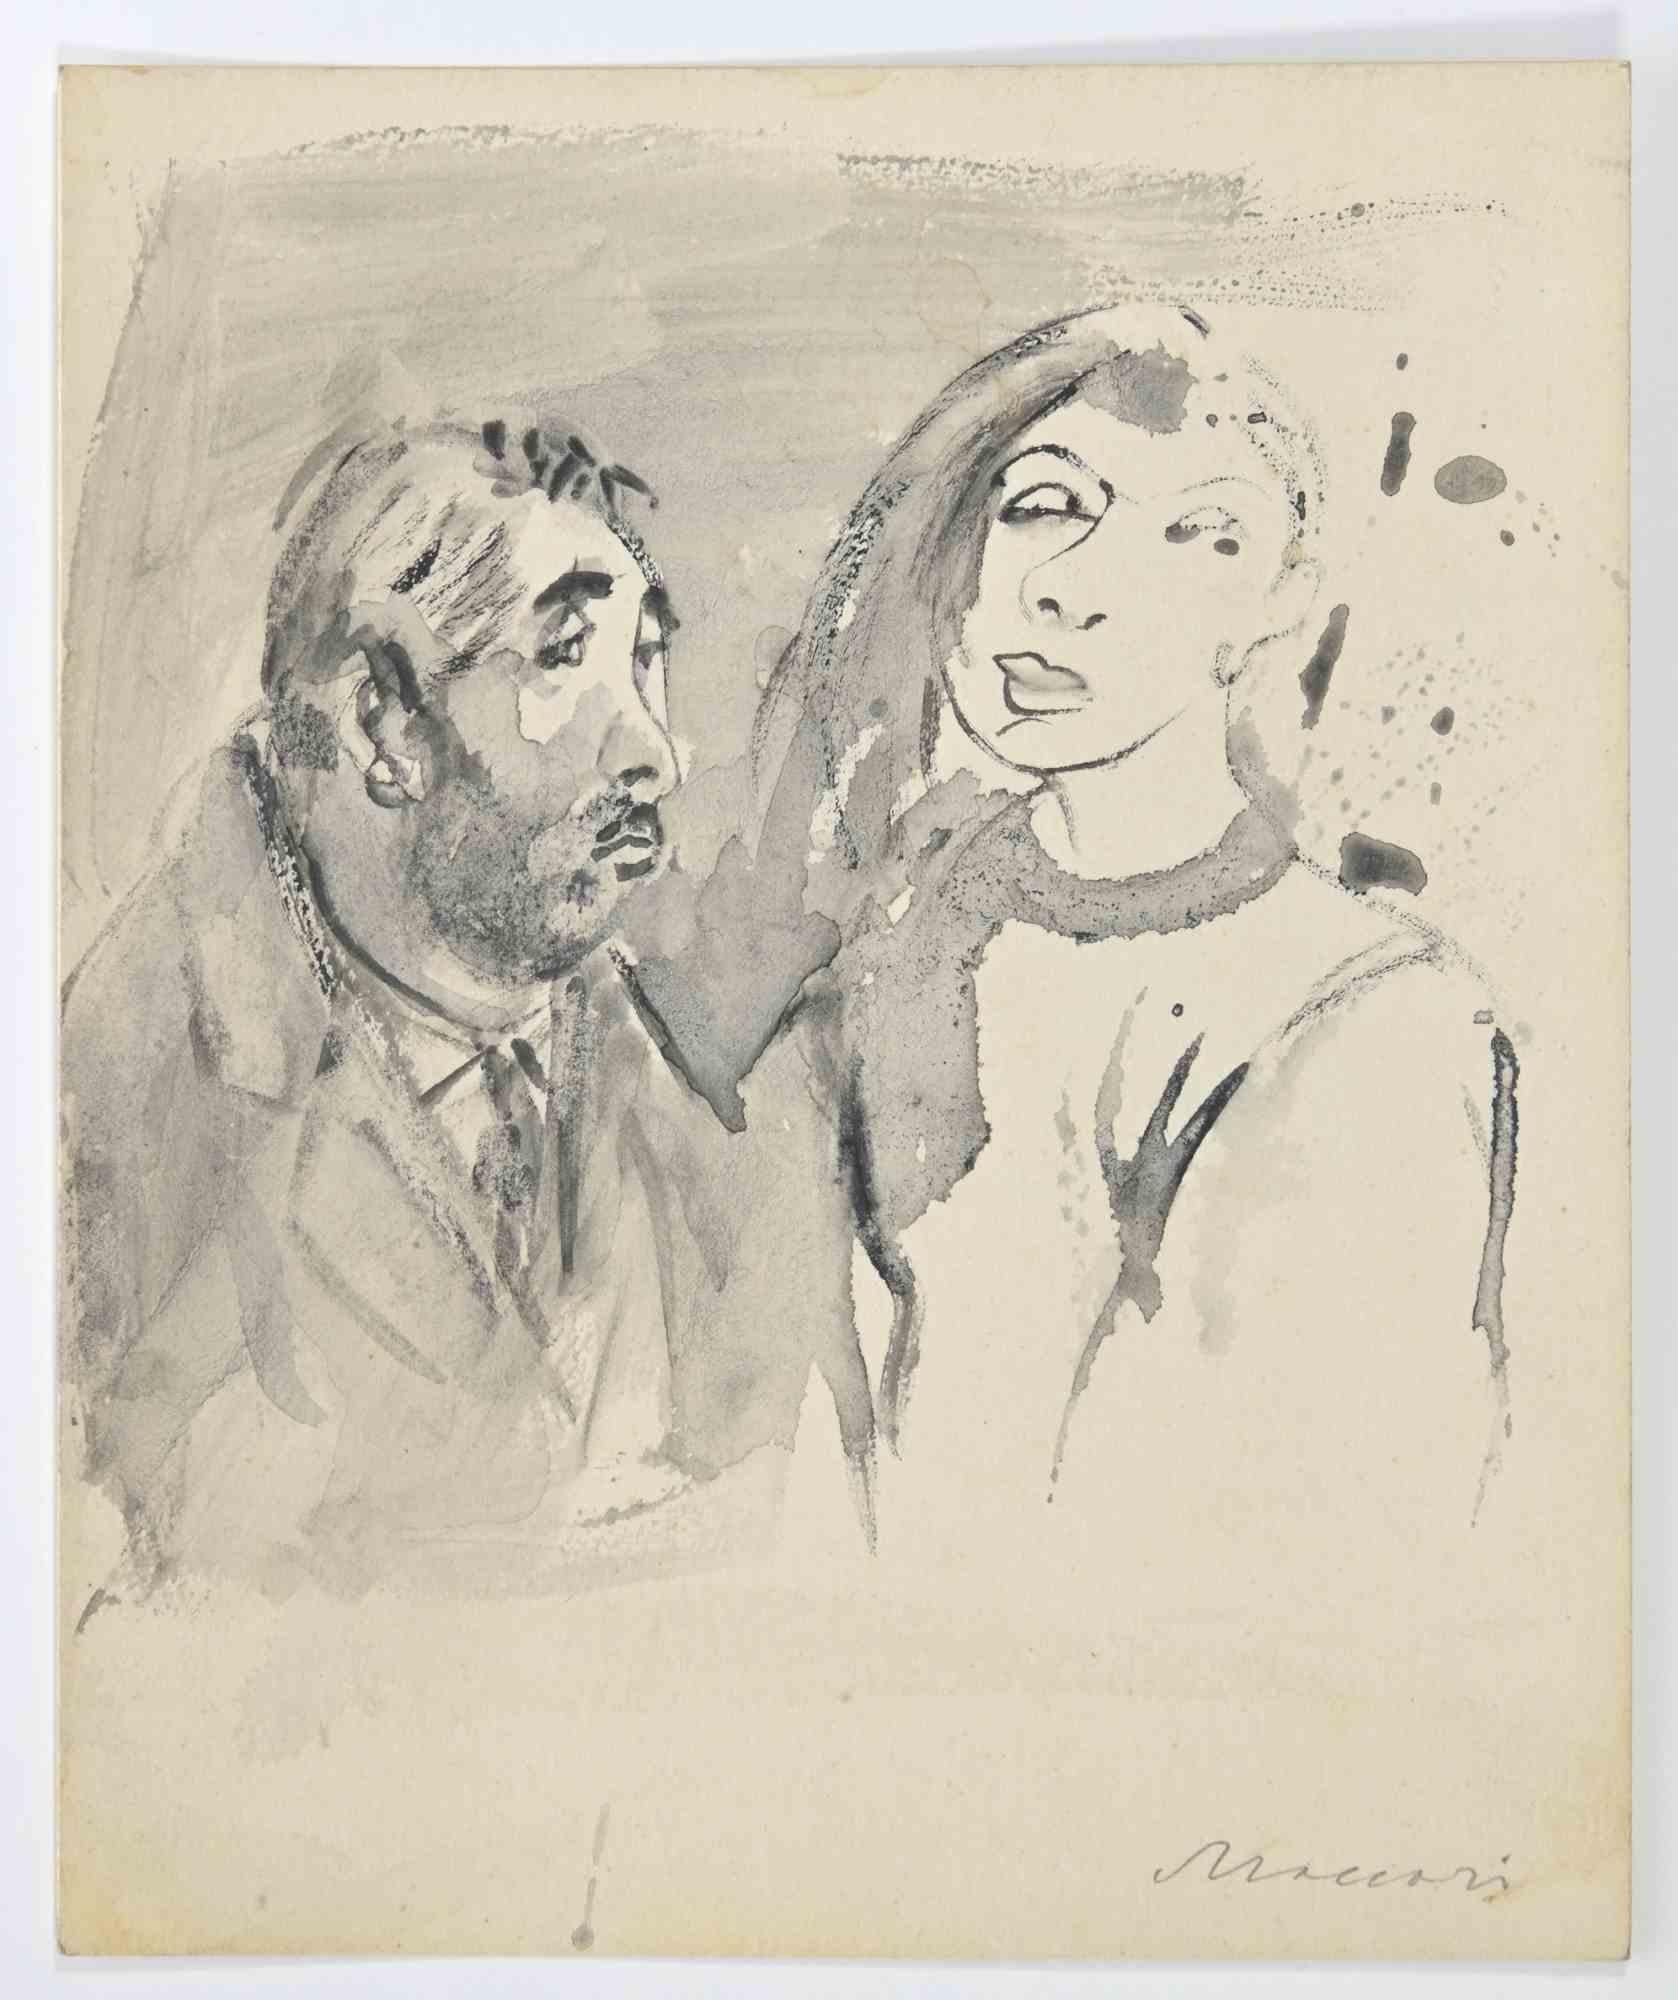 Das Ehepaar  Zeichnung von Mino Maccari – 1940er-Jahre